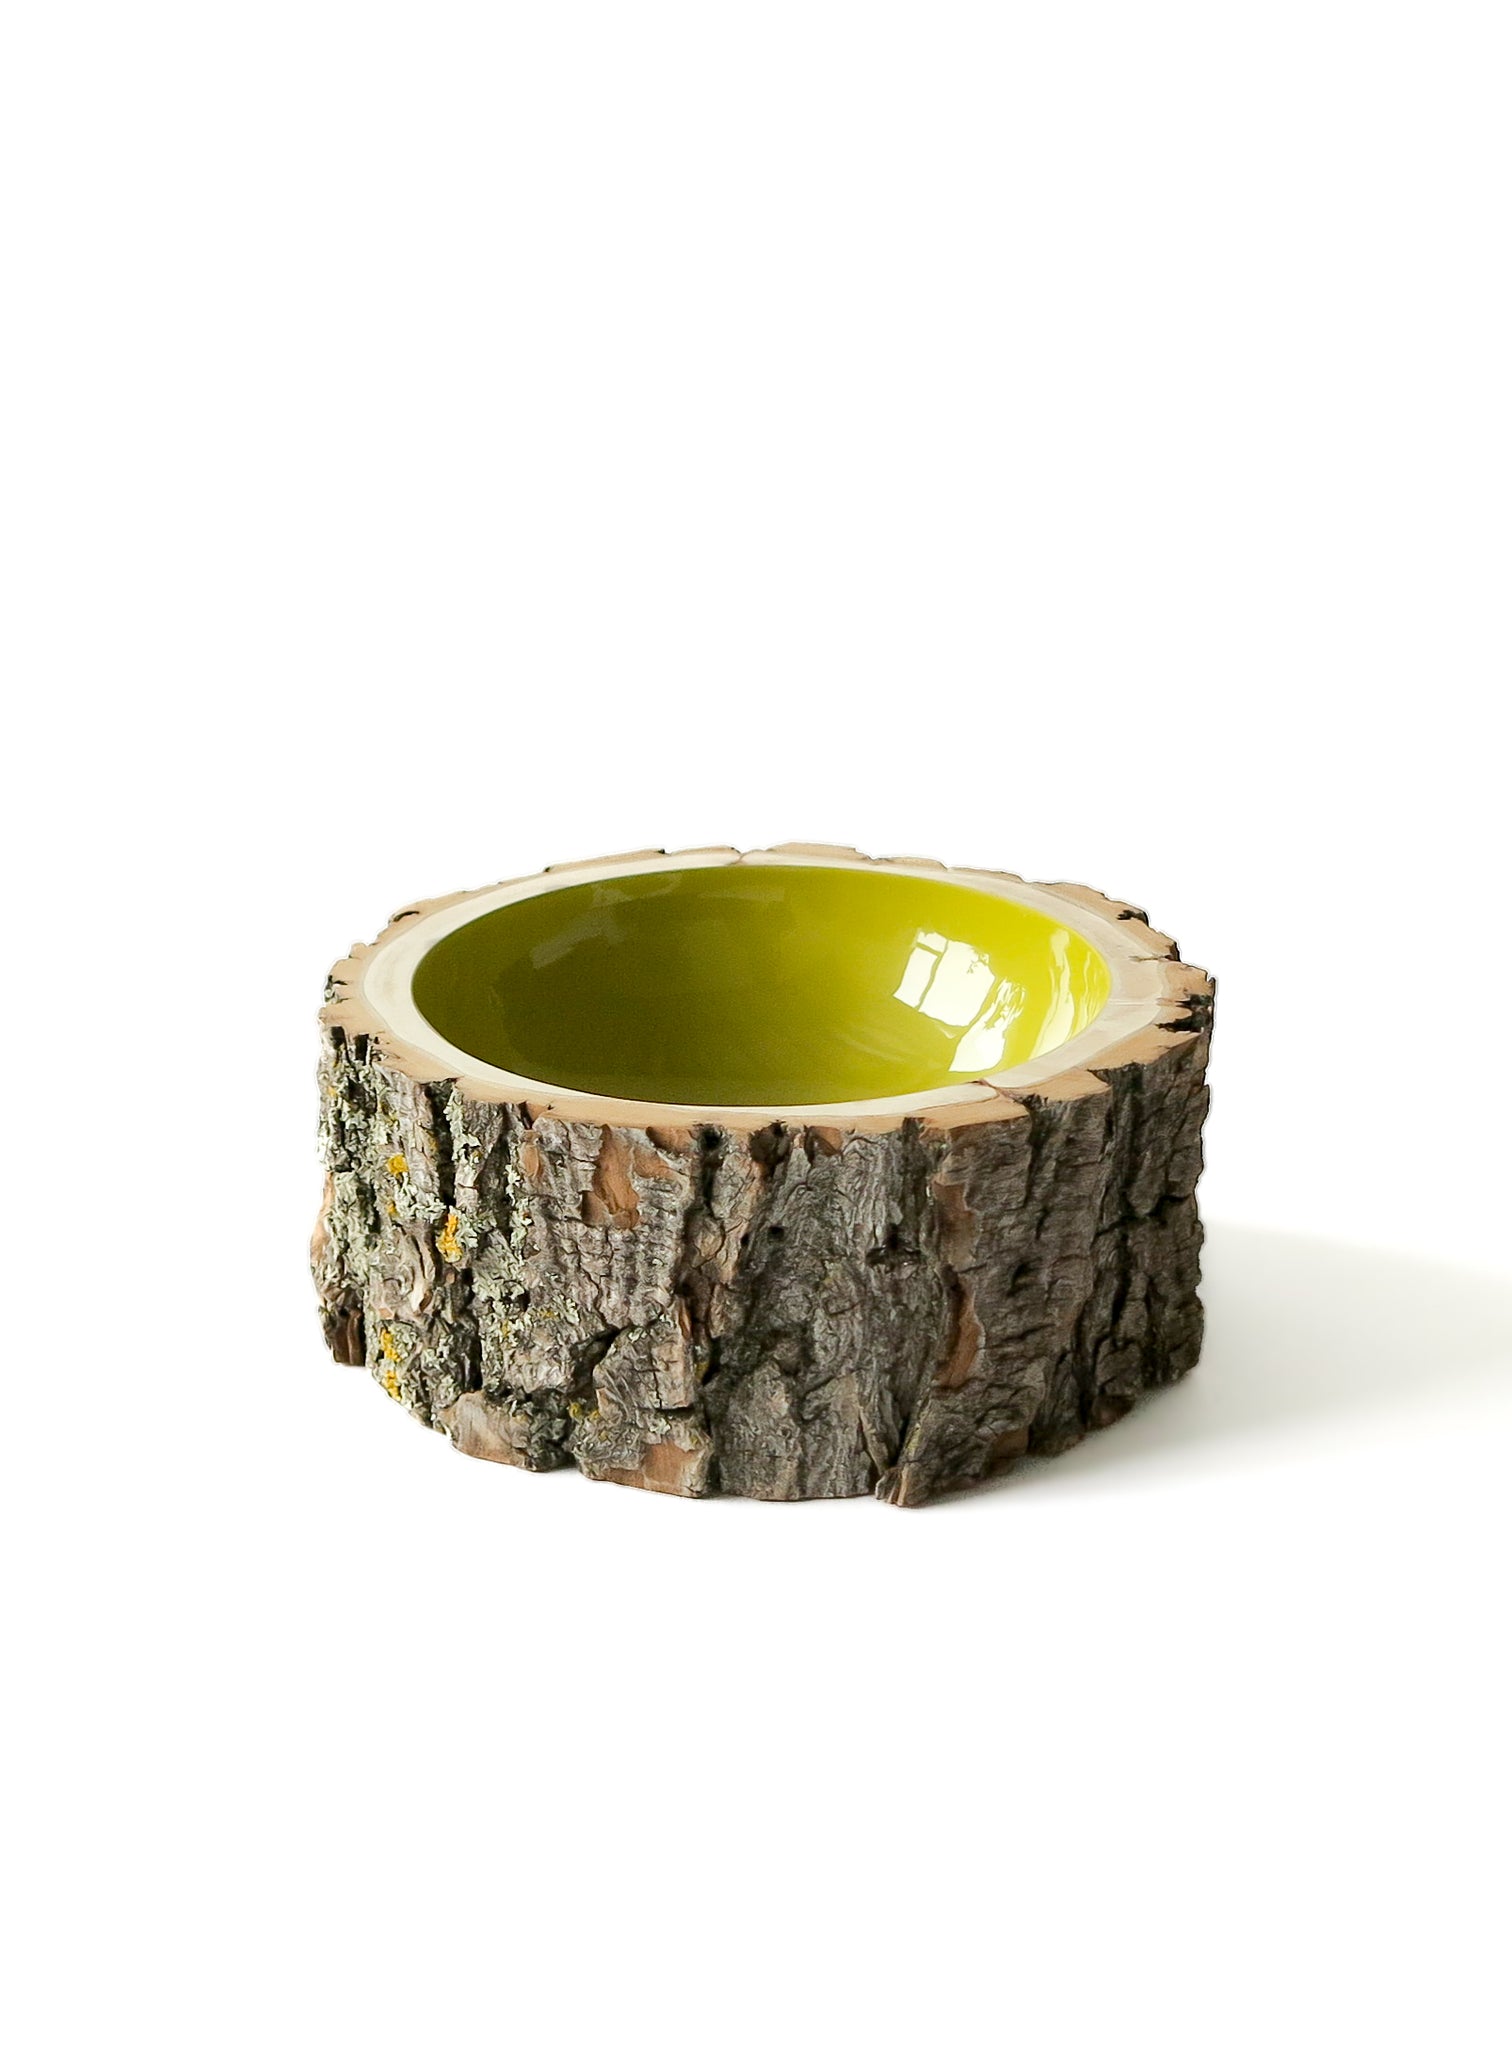 Log Bowl | Size 6 | Kiwi